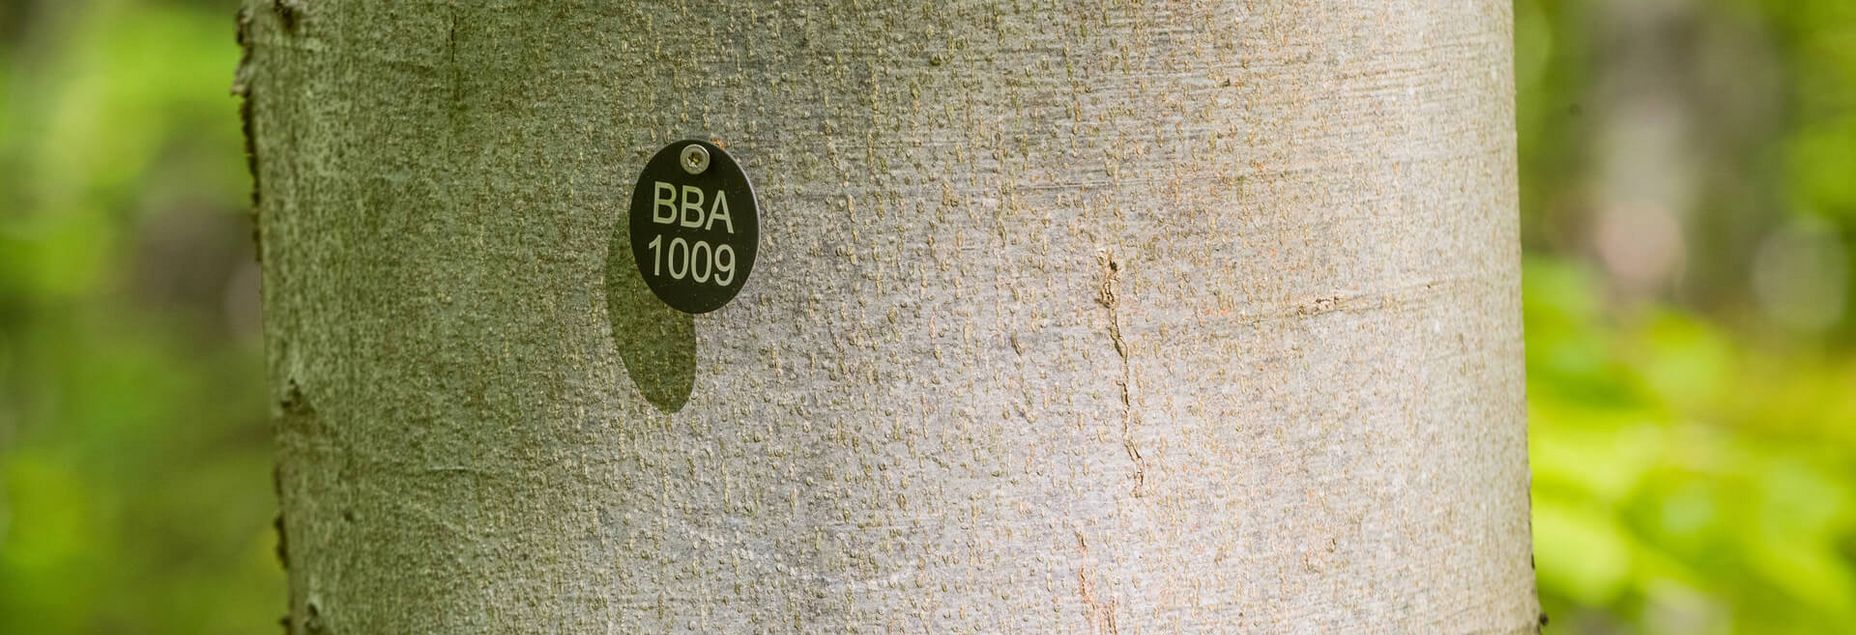 Baum BBA 1009 - Plakette